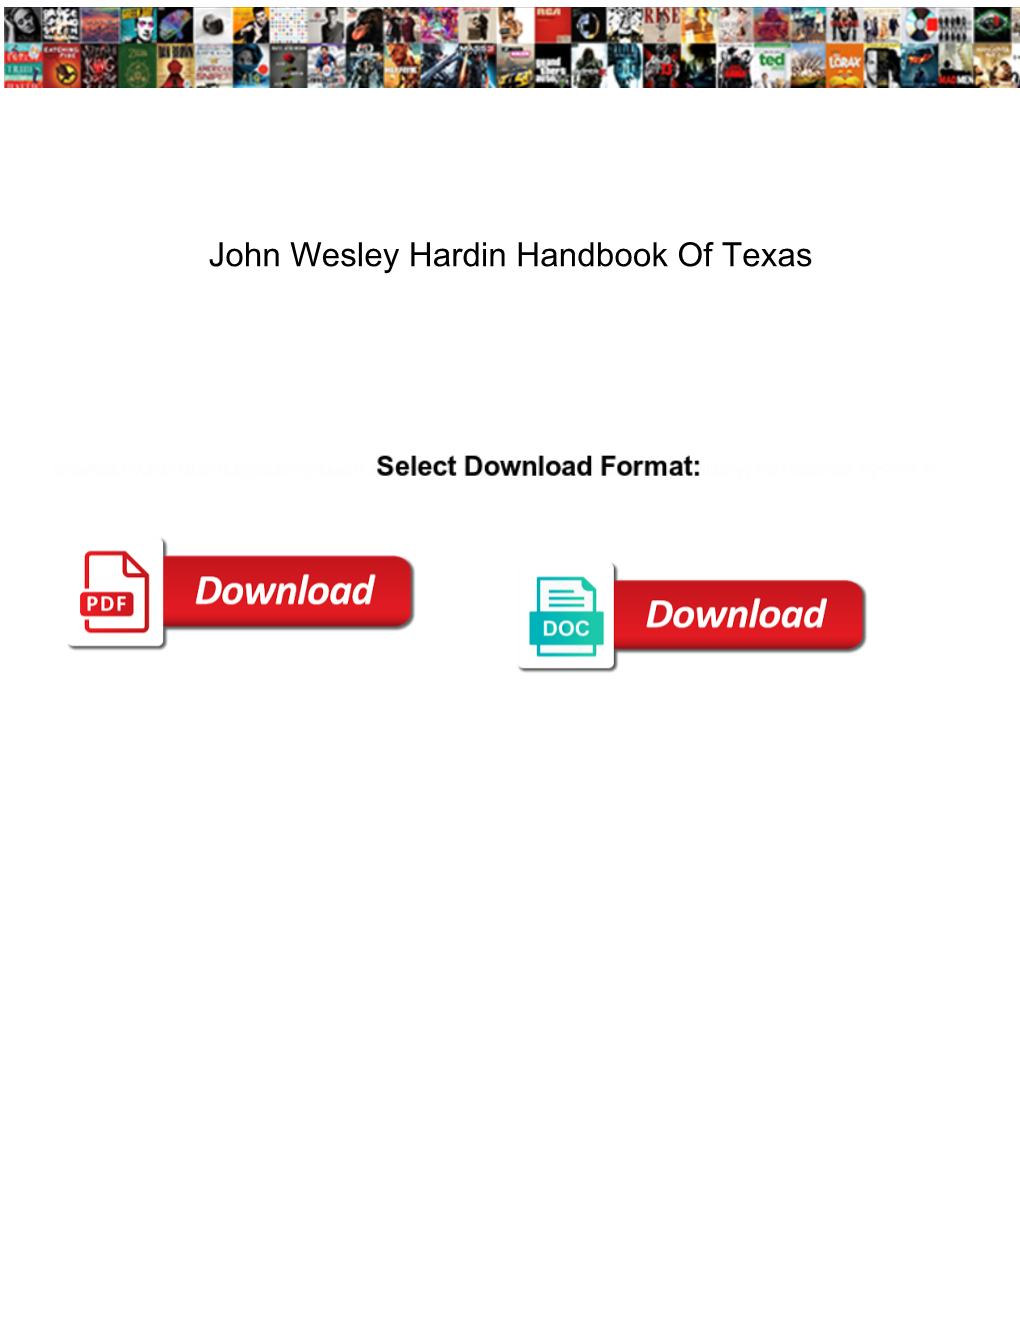 John Wesley Hardin Handbook of Texas